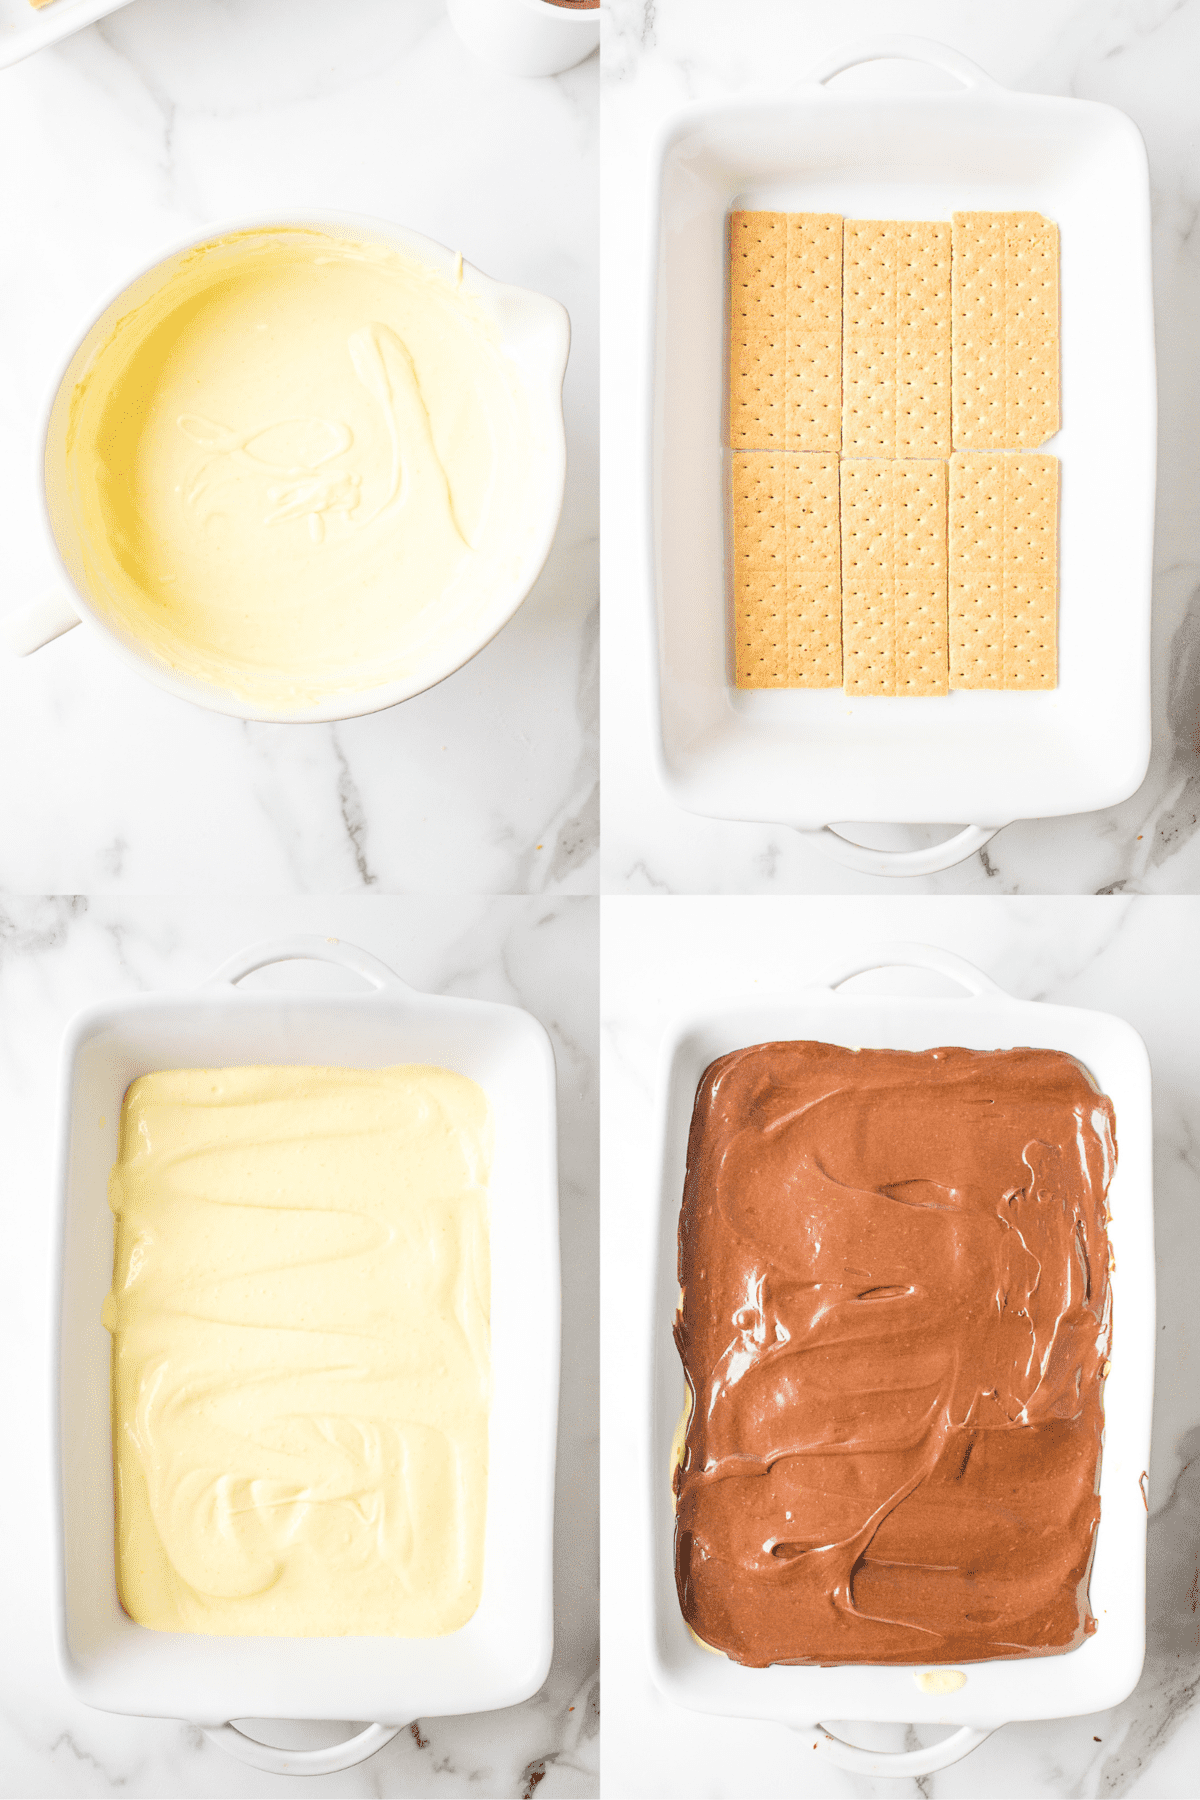 steps to make no bake chocolate eclair cake